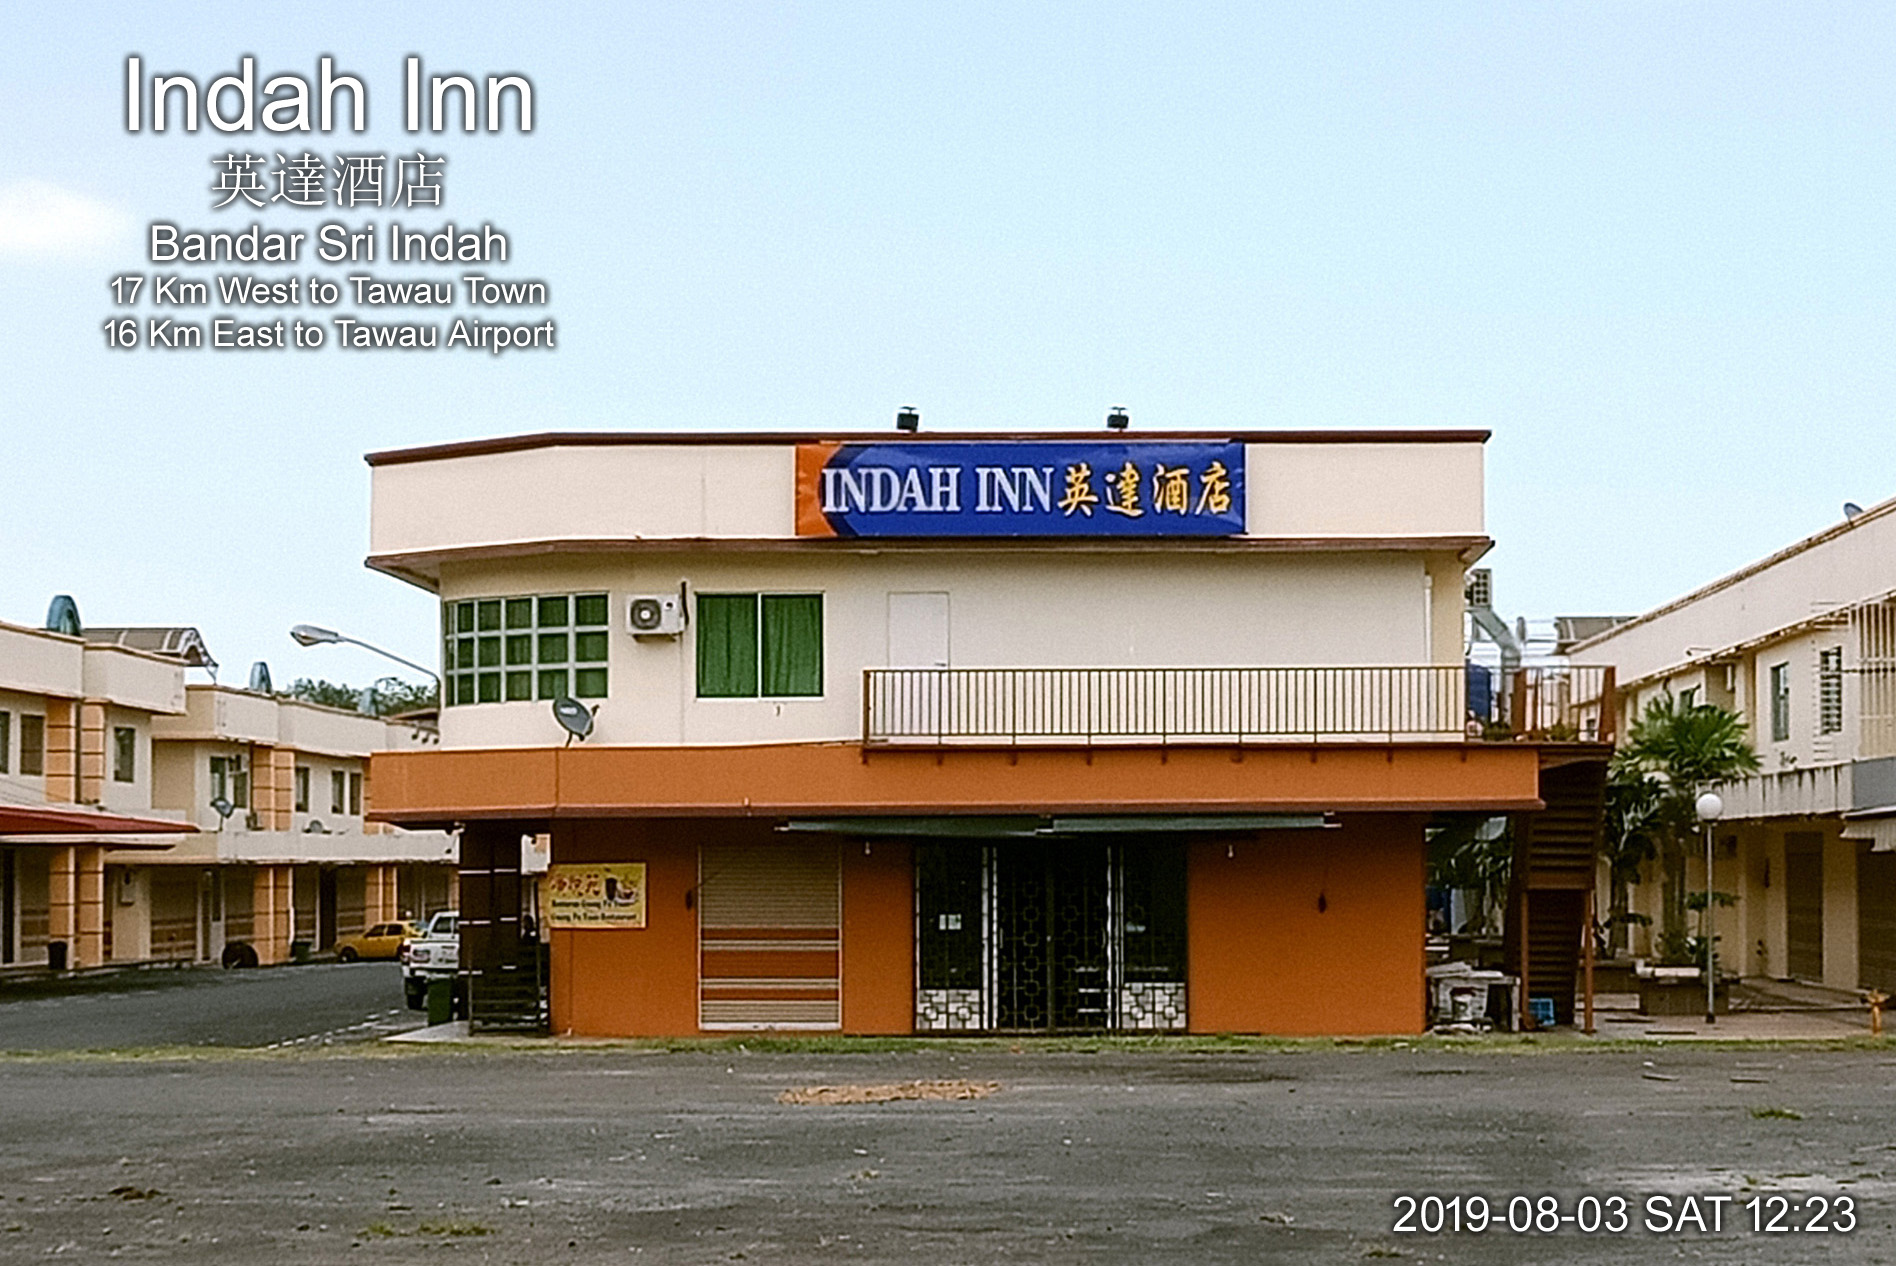 Indah Inn, Bandar Sri Indah英達酒店